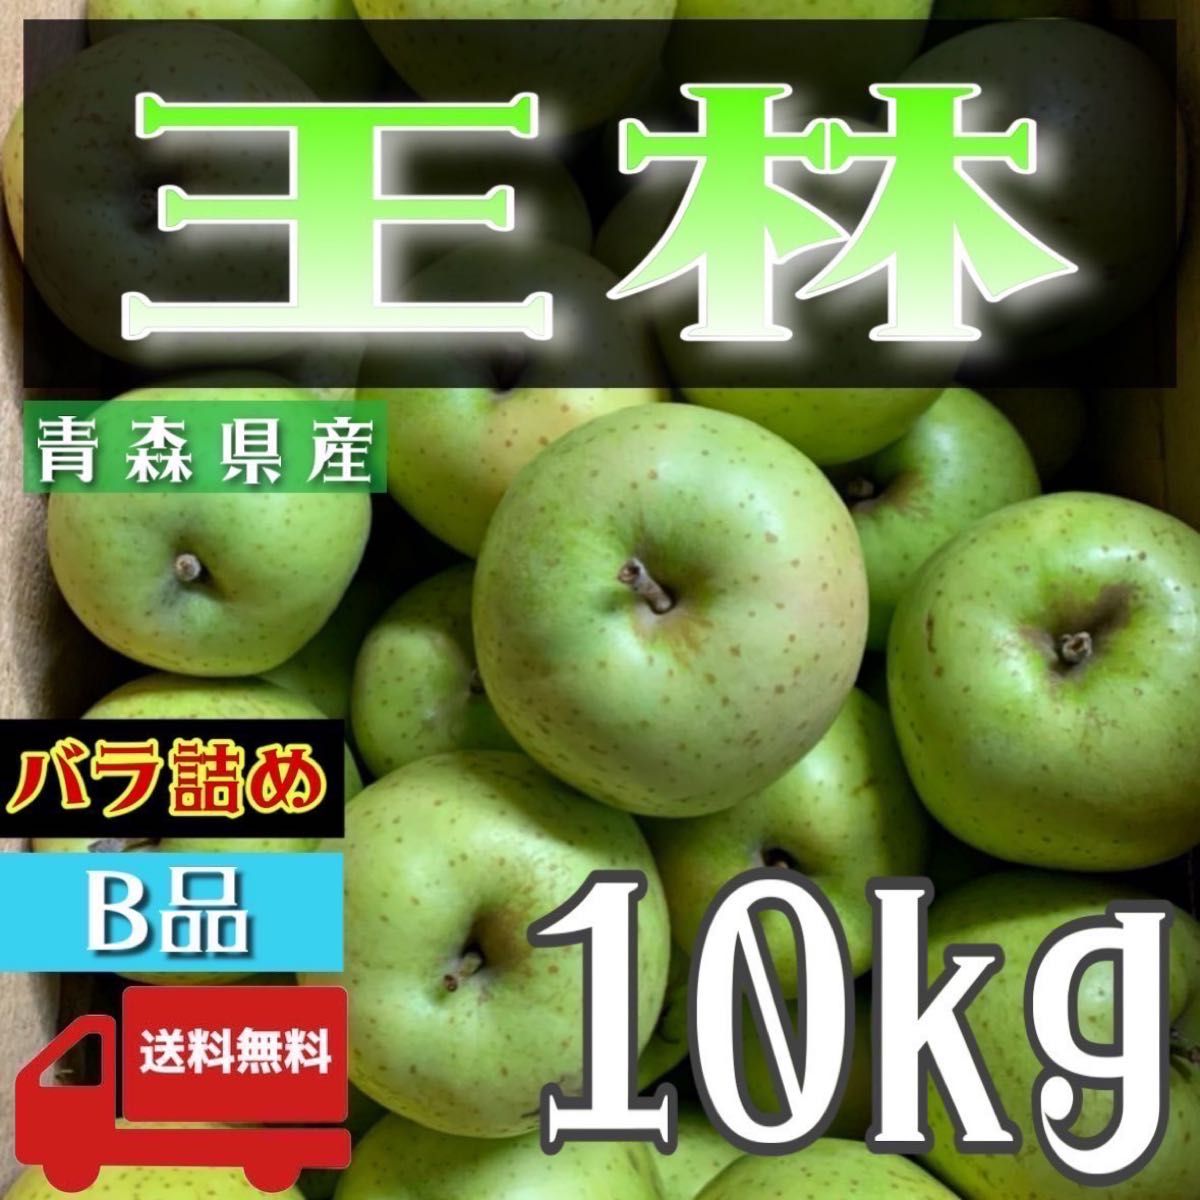 ＂ 王林 ＂【青森県産りんご10kg】【産地直送】【即購入OK】【送料無料】家庭用 りんご リンゴ  林檎